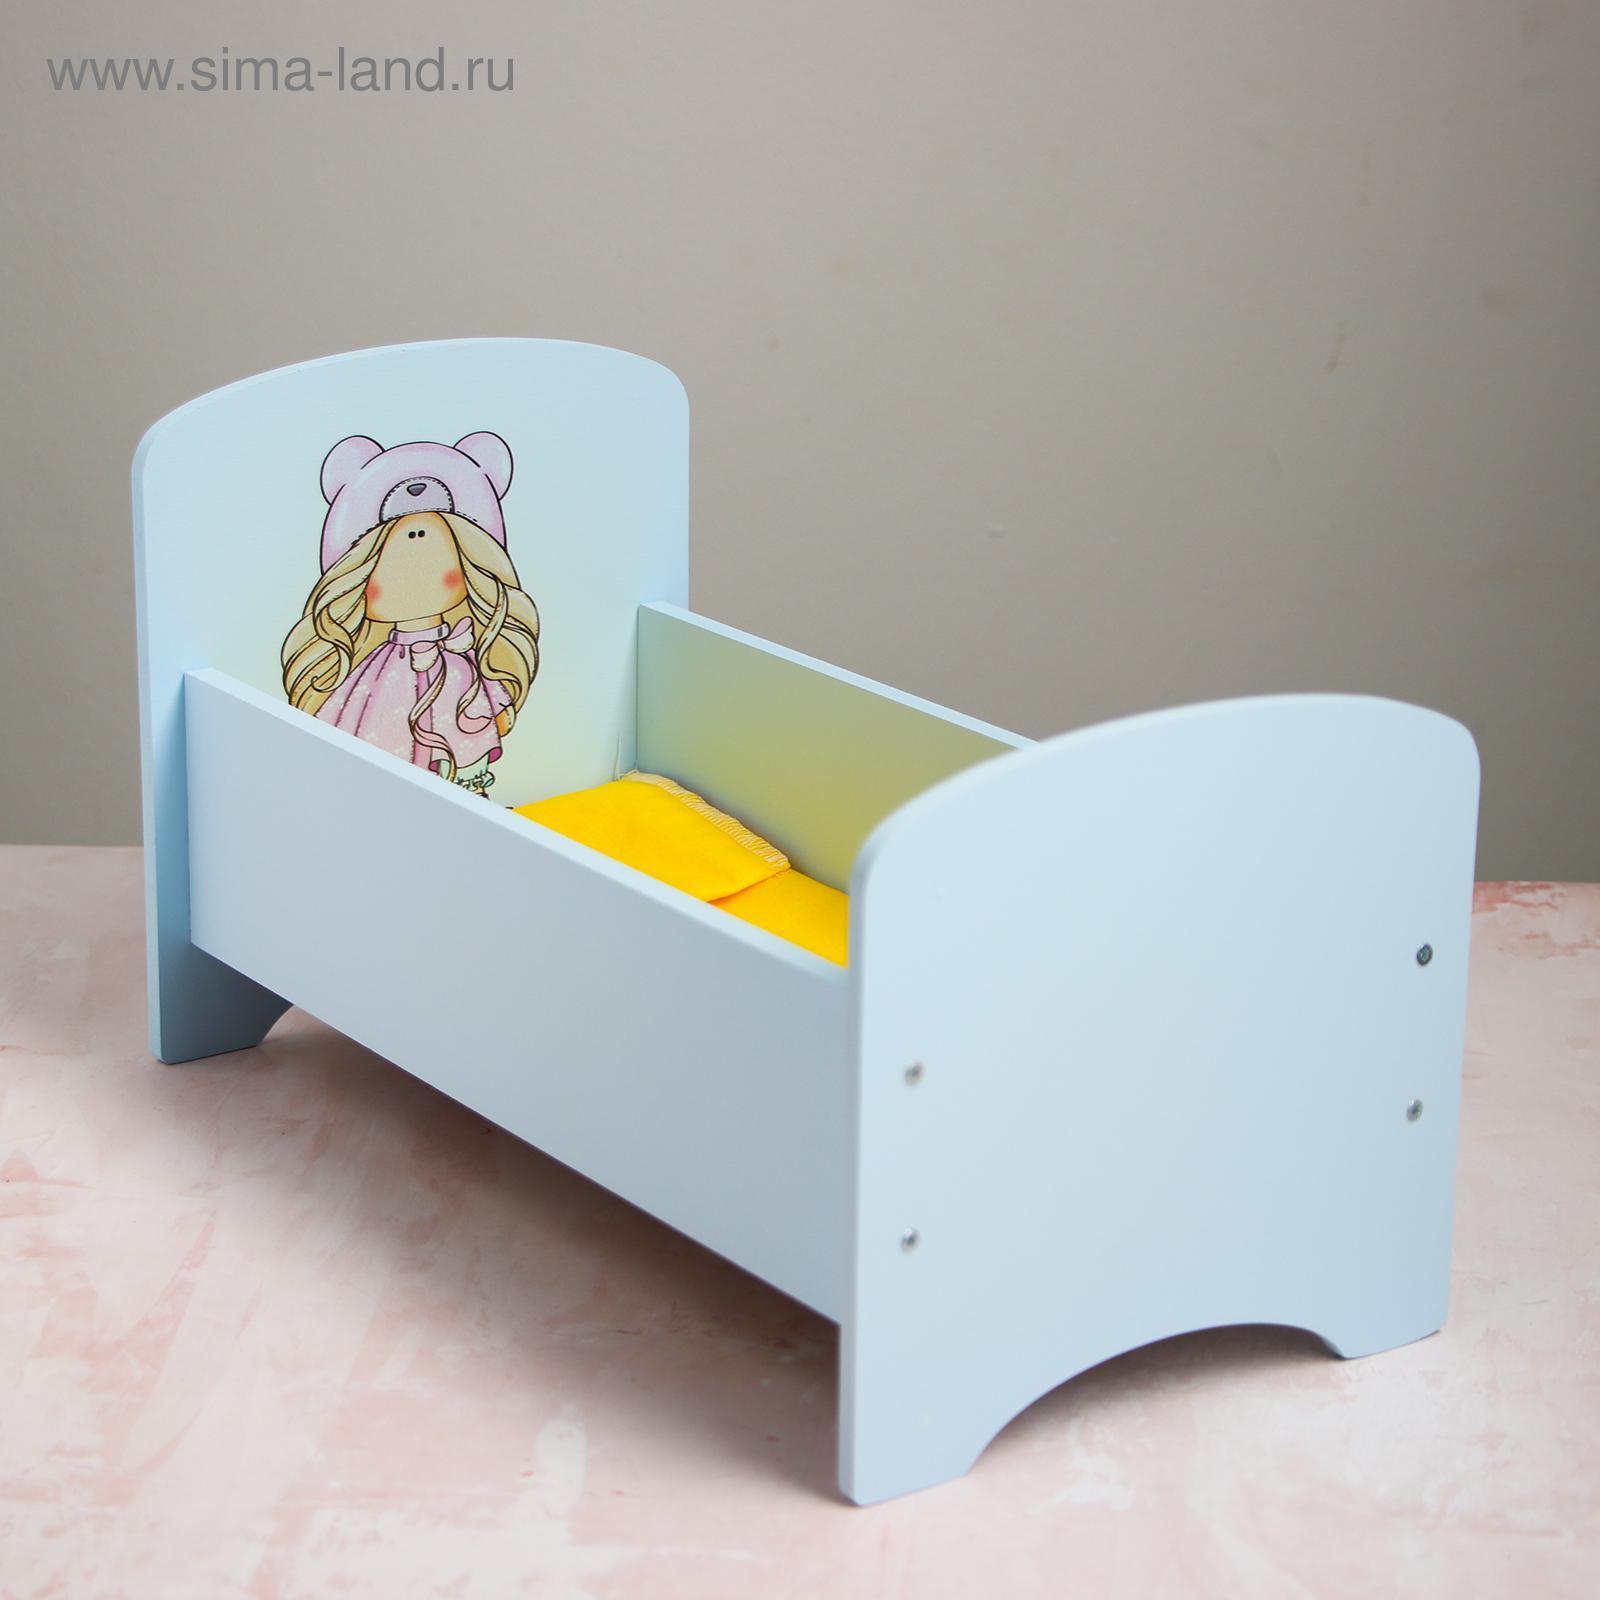 Кроватка для куклы своими руками: как сделать из картона, коробки или бумаги мебель для пупса